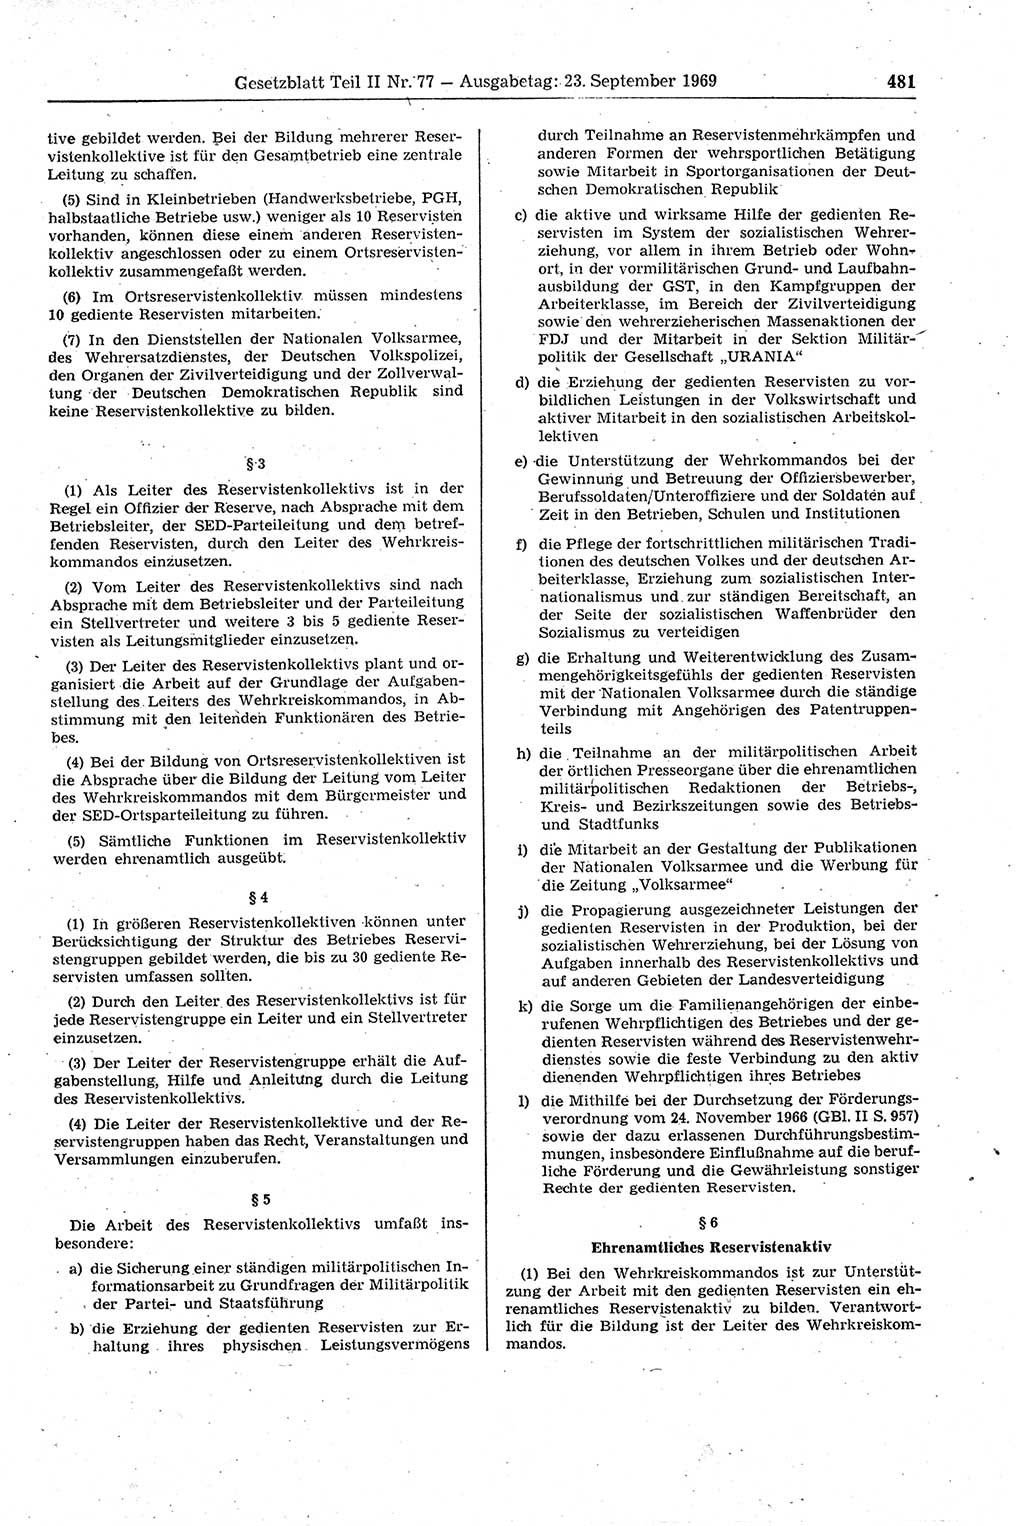 Gesetzblatt (GBl.) der Deutschen Demokratischen Republik (DDR) Teil ⅠⅠ 1969, Seite 481 (GBl. DDR ⅠⅠ 1969, S. 481)